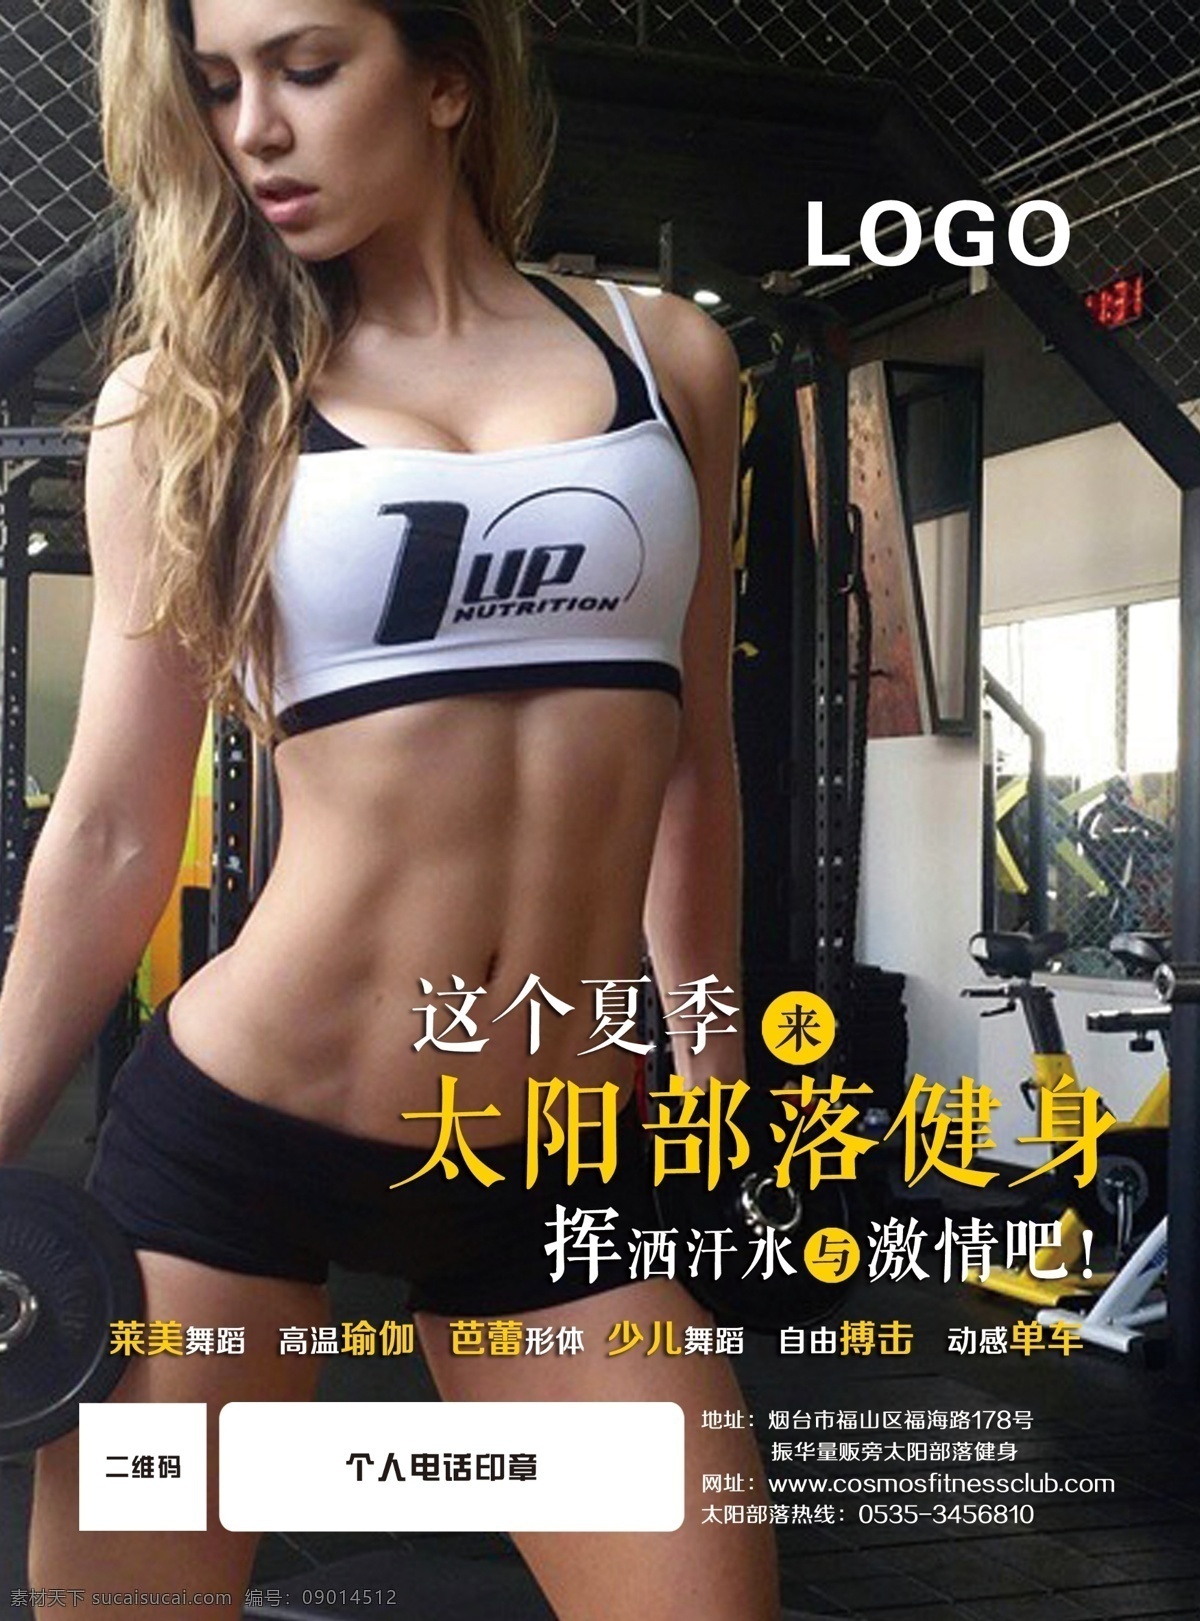 美女健身海报 健身 美女 海报 印刷 运动 俱乐部